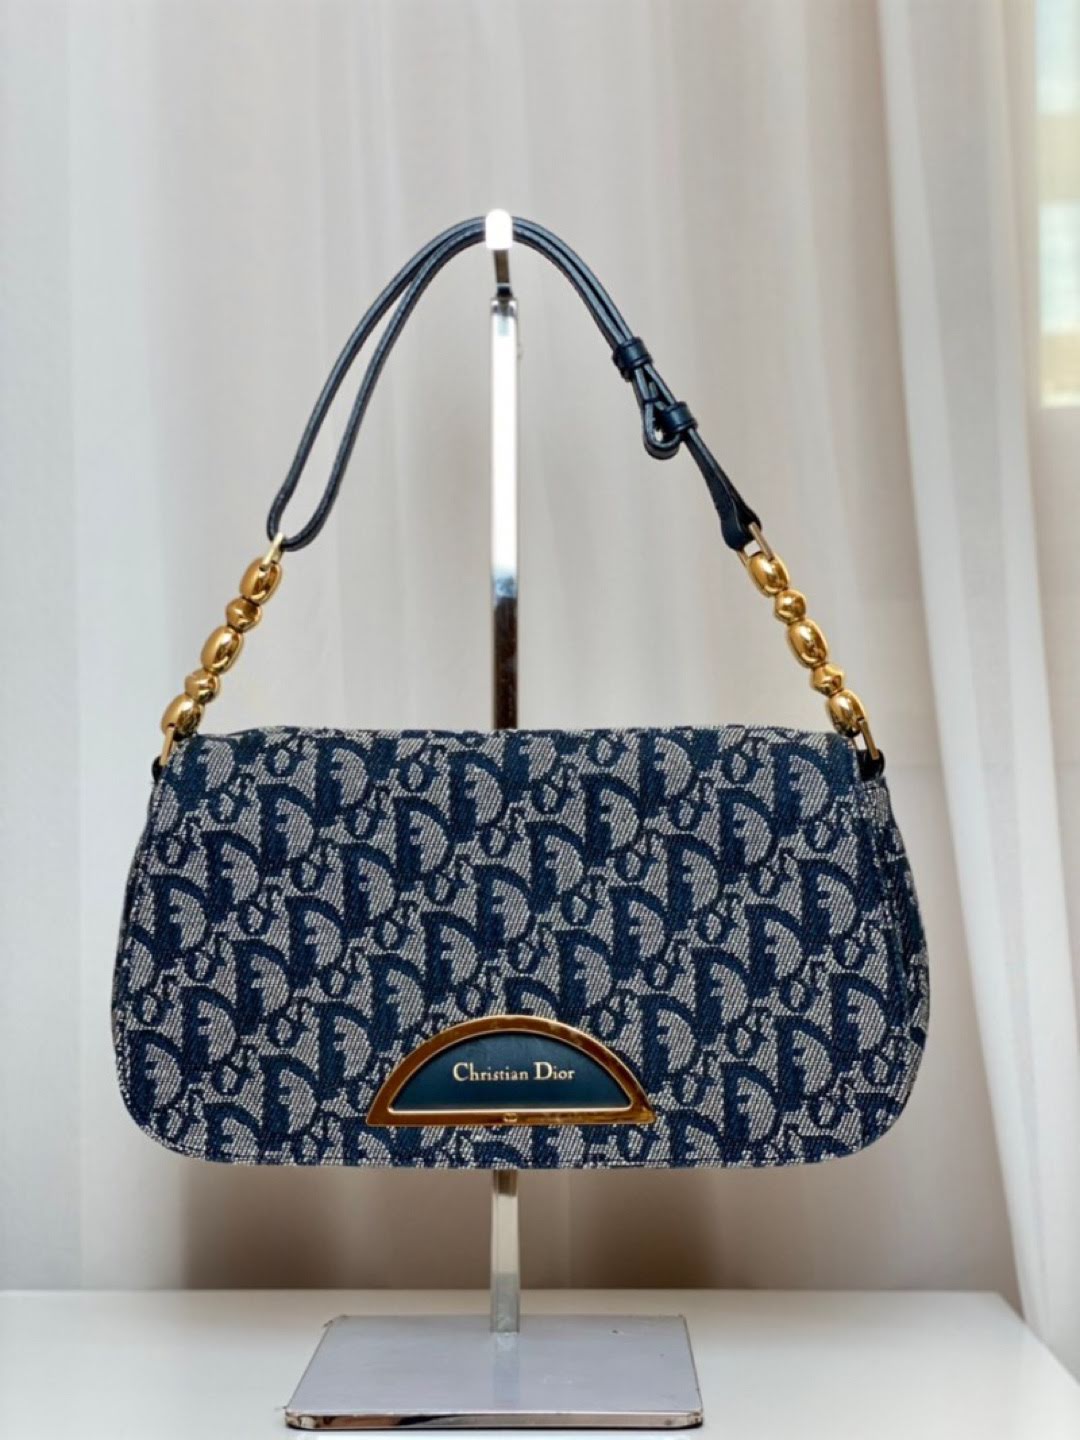 Đây là chiếc túi có tên Christian Dior Trotter Maris Pearl với chất liệu denim và hoạ tiết monogram đặc trưng của Dior.